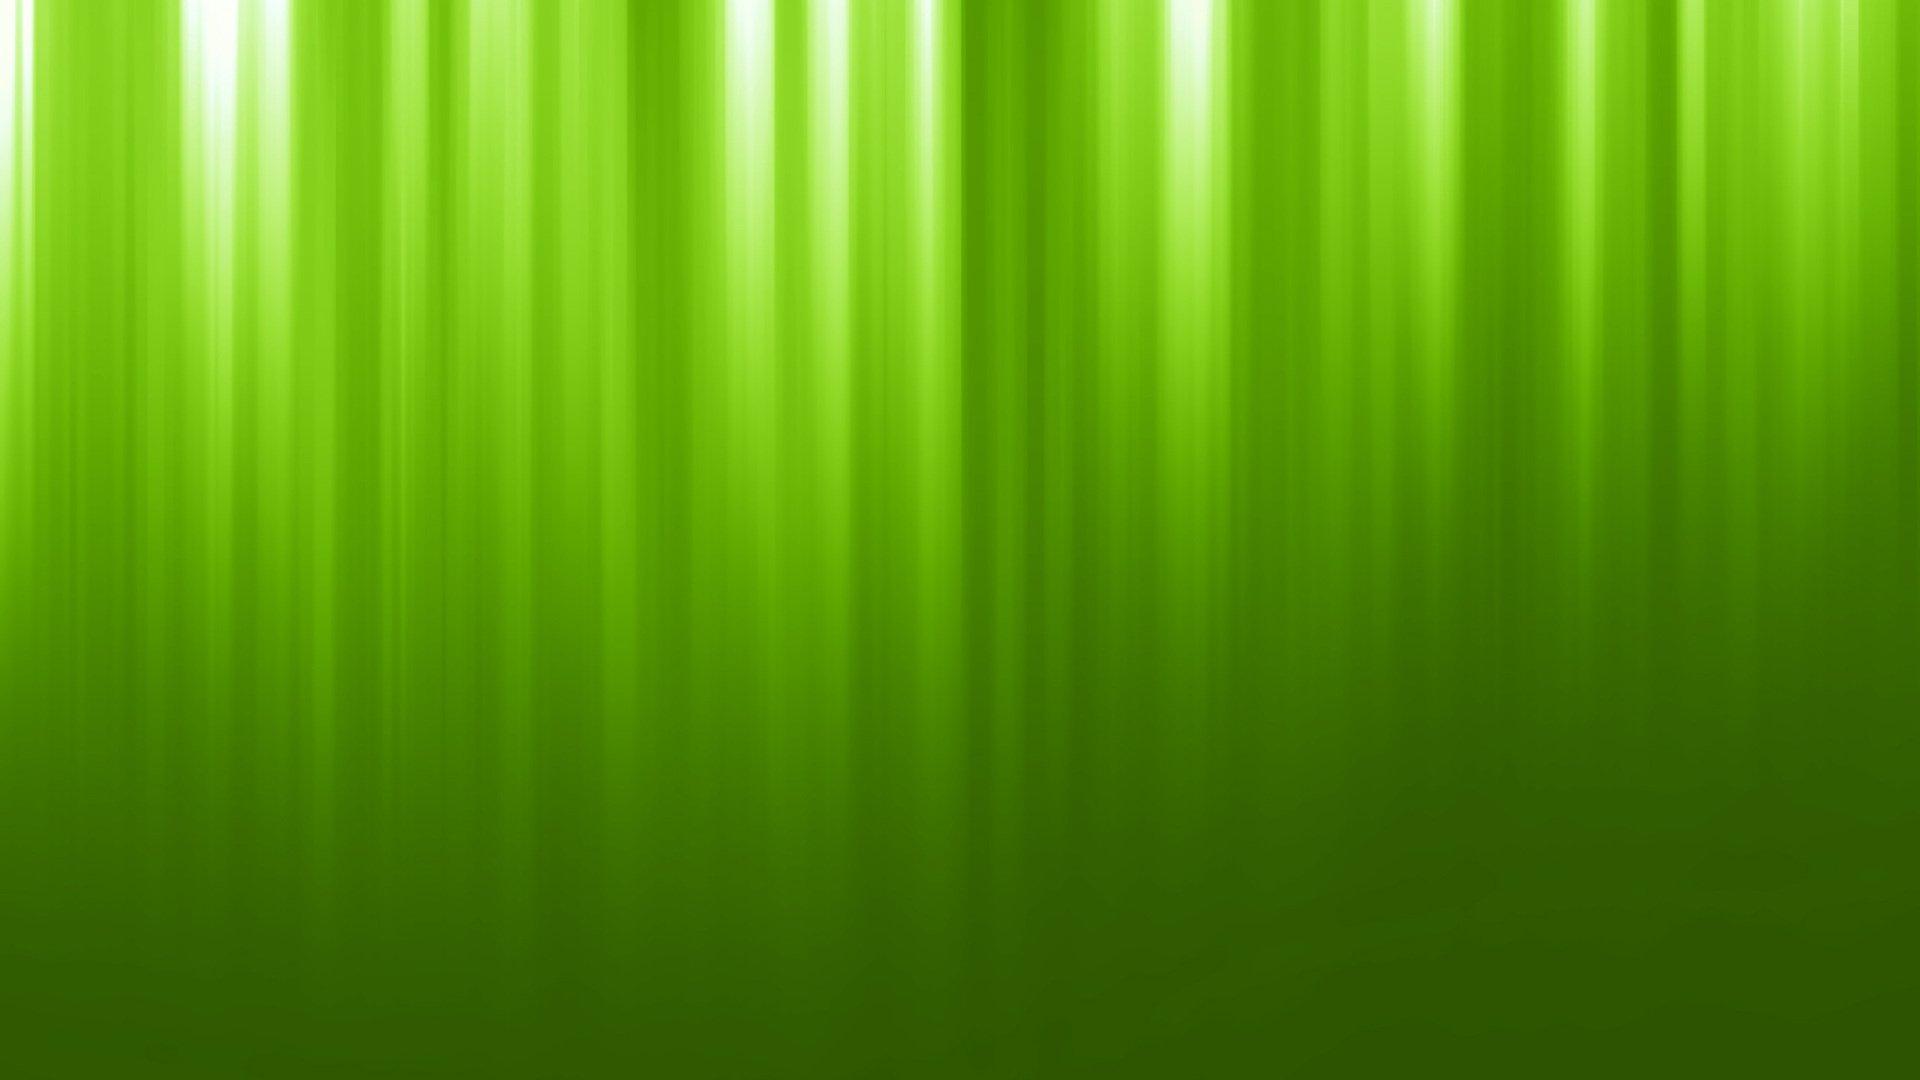 1920x1080 Hình nền xanh lá cây 11